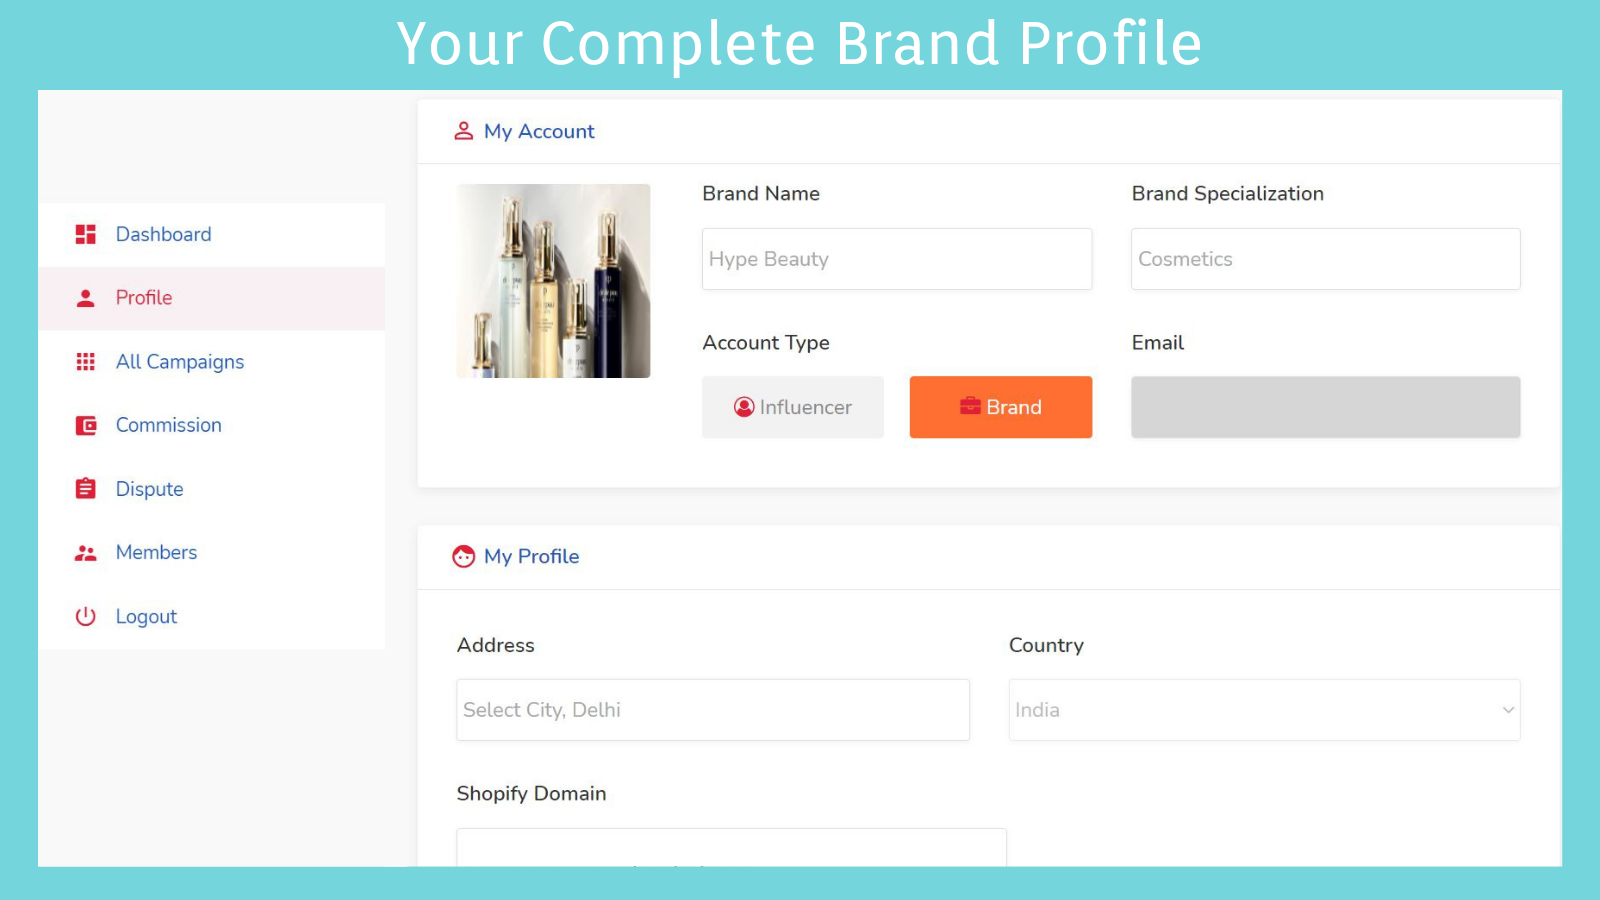 Complete Brand Profile View